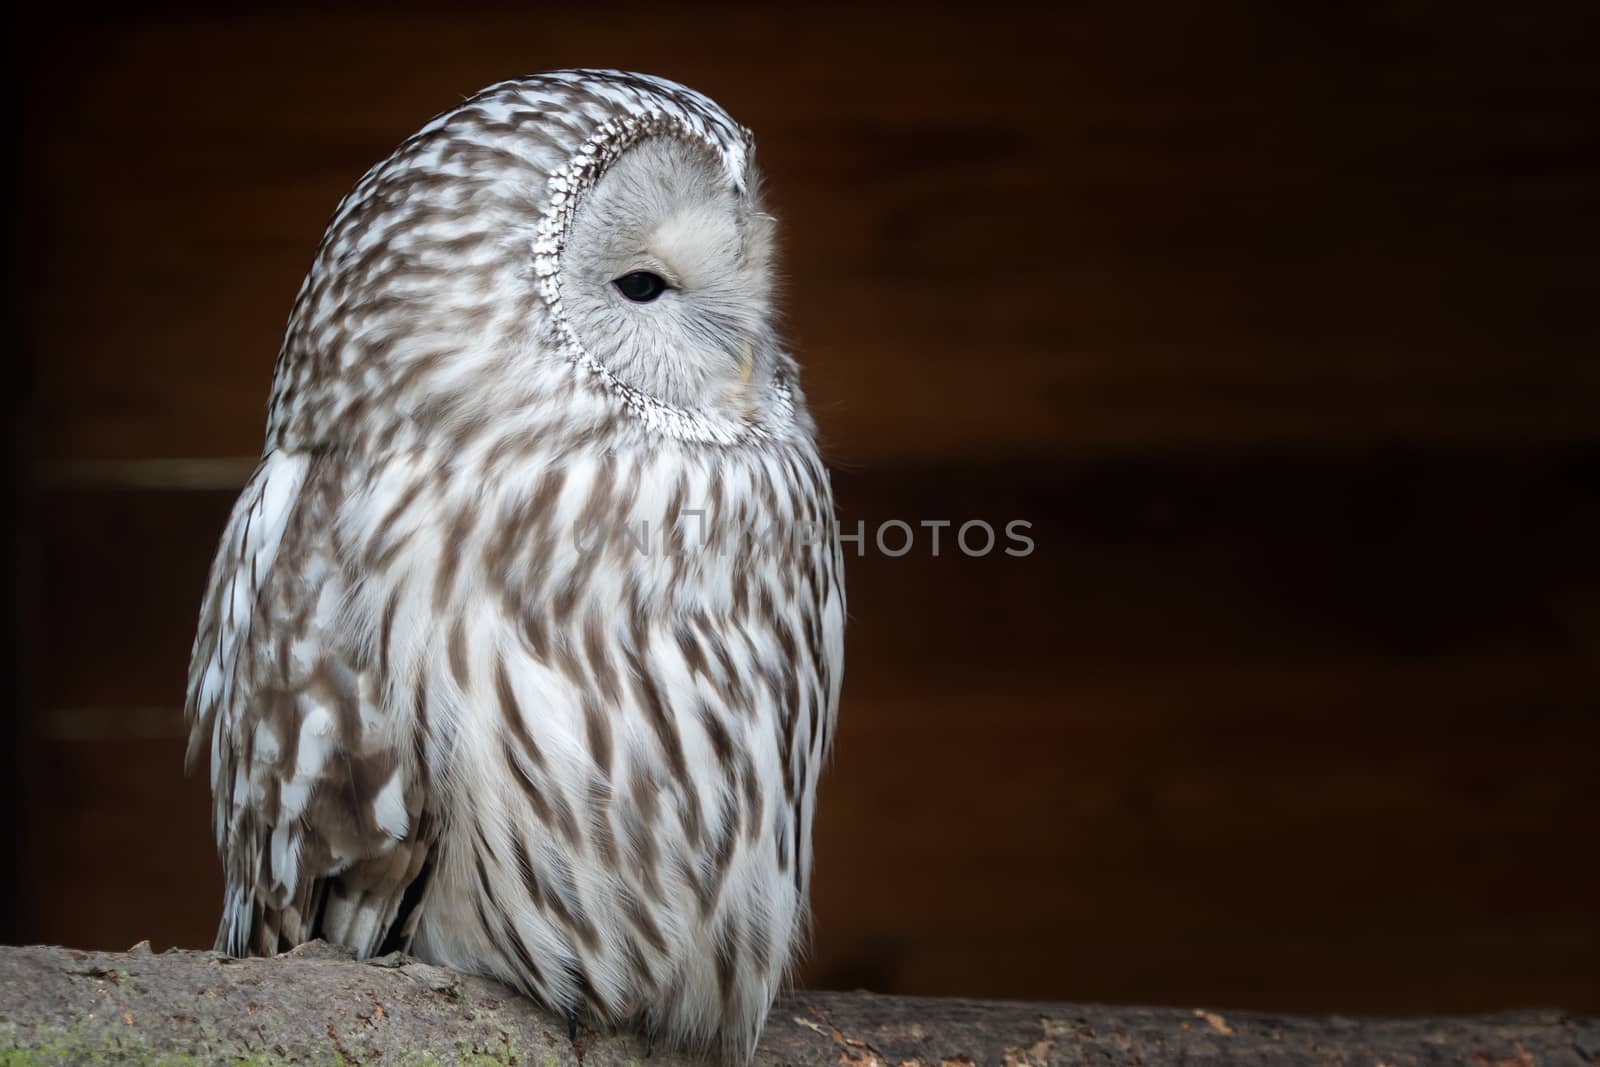 Ural owl (Strix uralensis). Nocturnal owl on black background by xtrekx